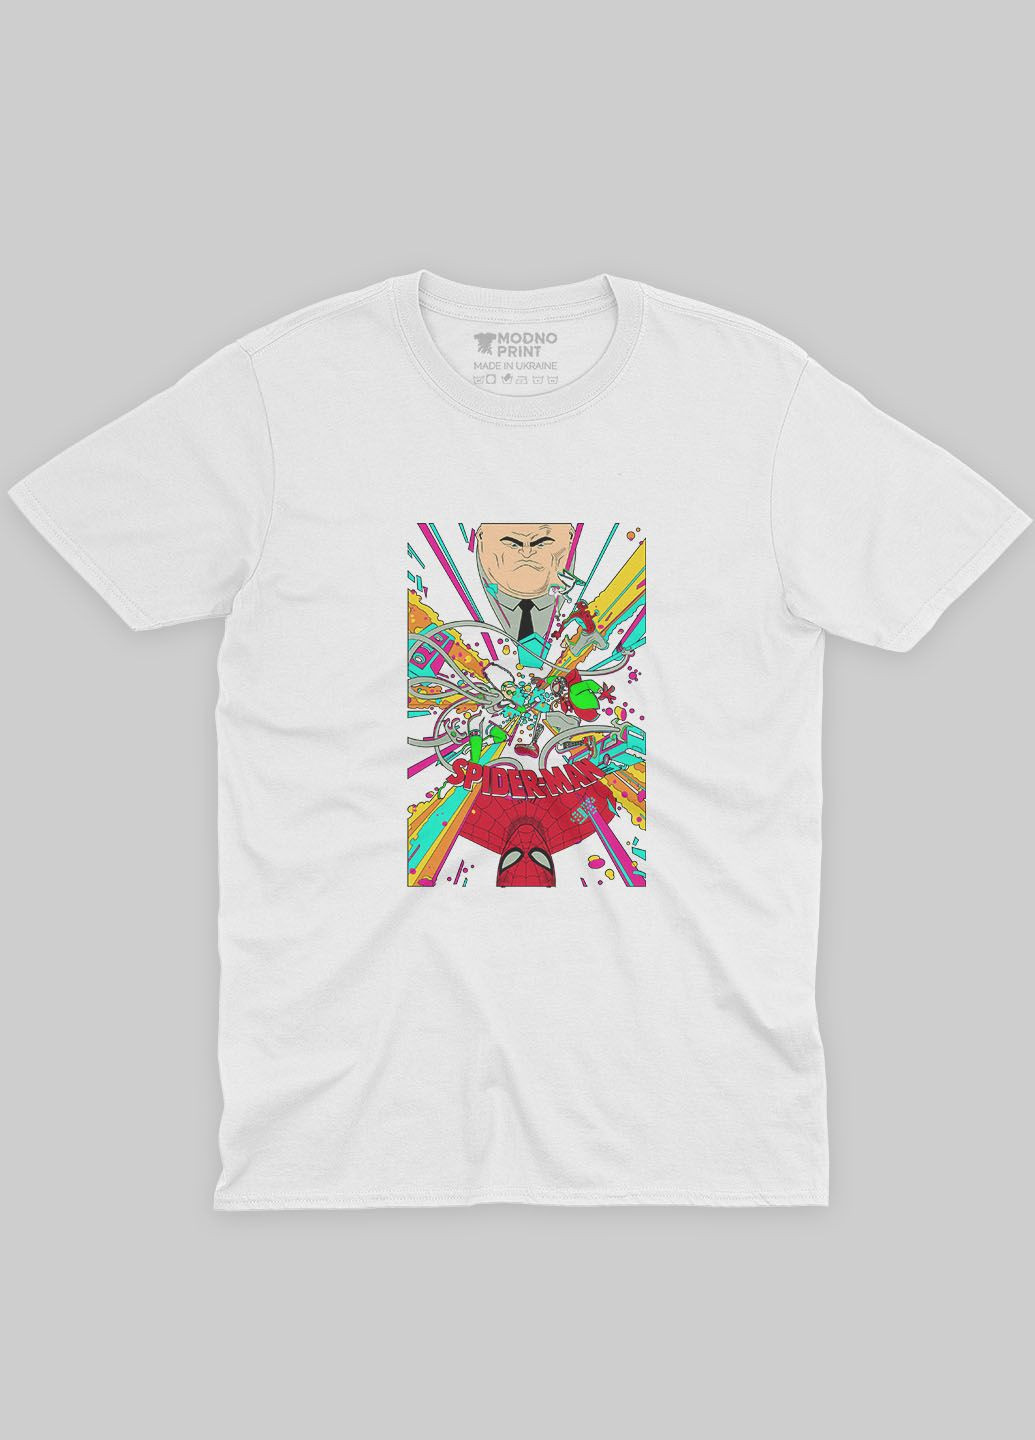 Белая демисезонная футболка для девочки с принтом супергероя - человек-паук (ts001-1-whi-006-014-022-g) Modno